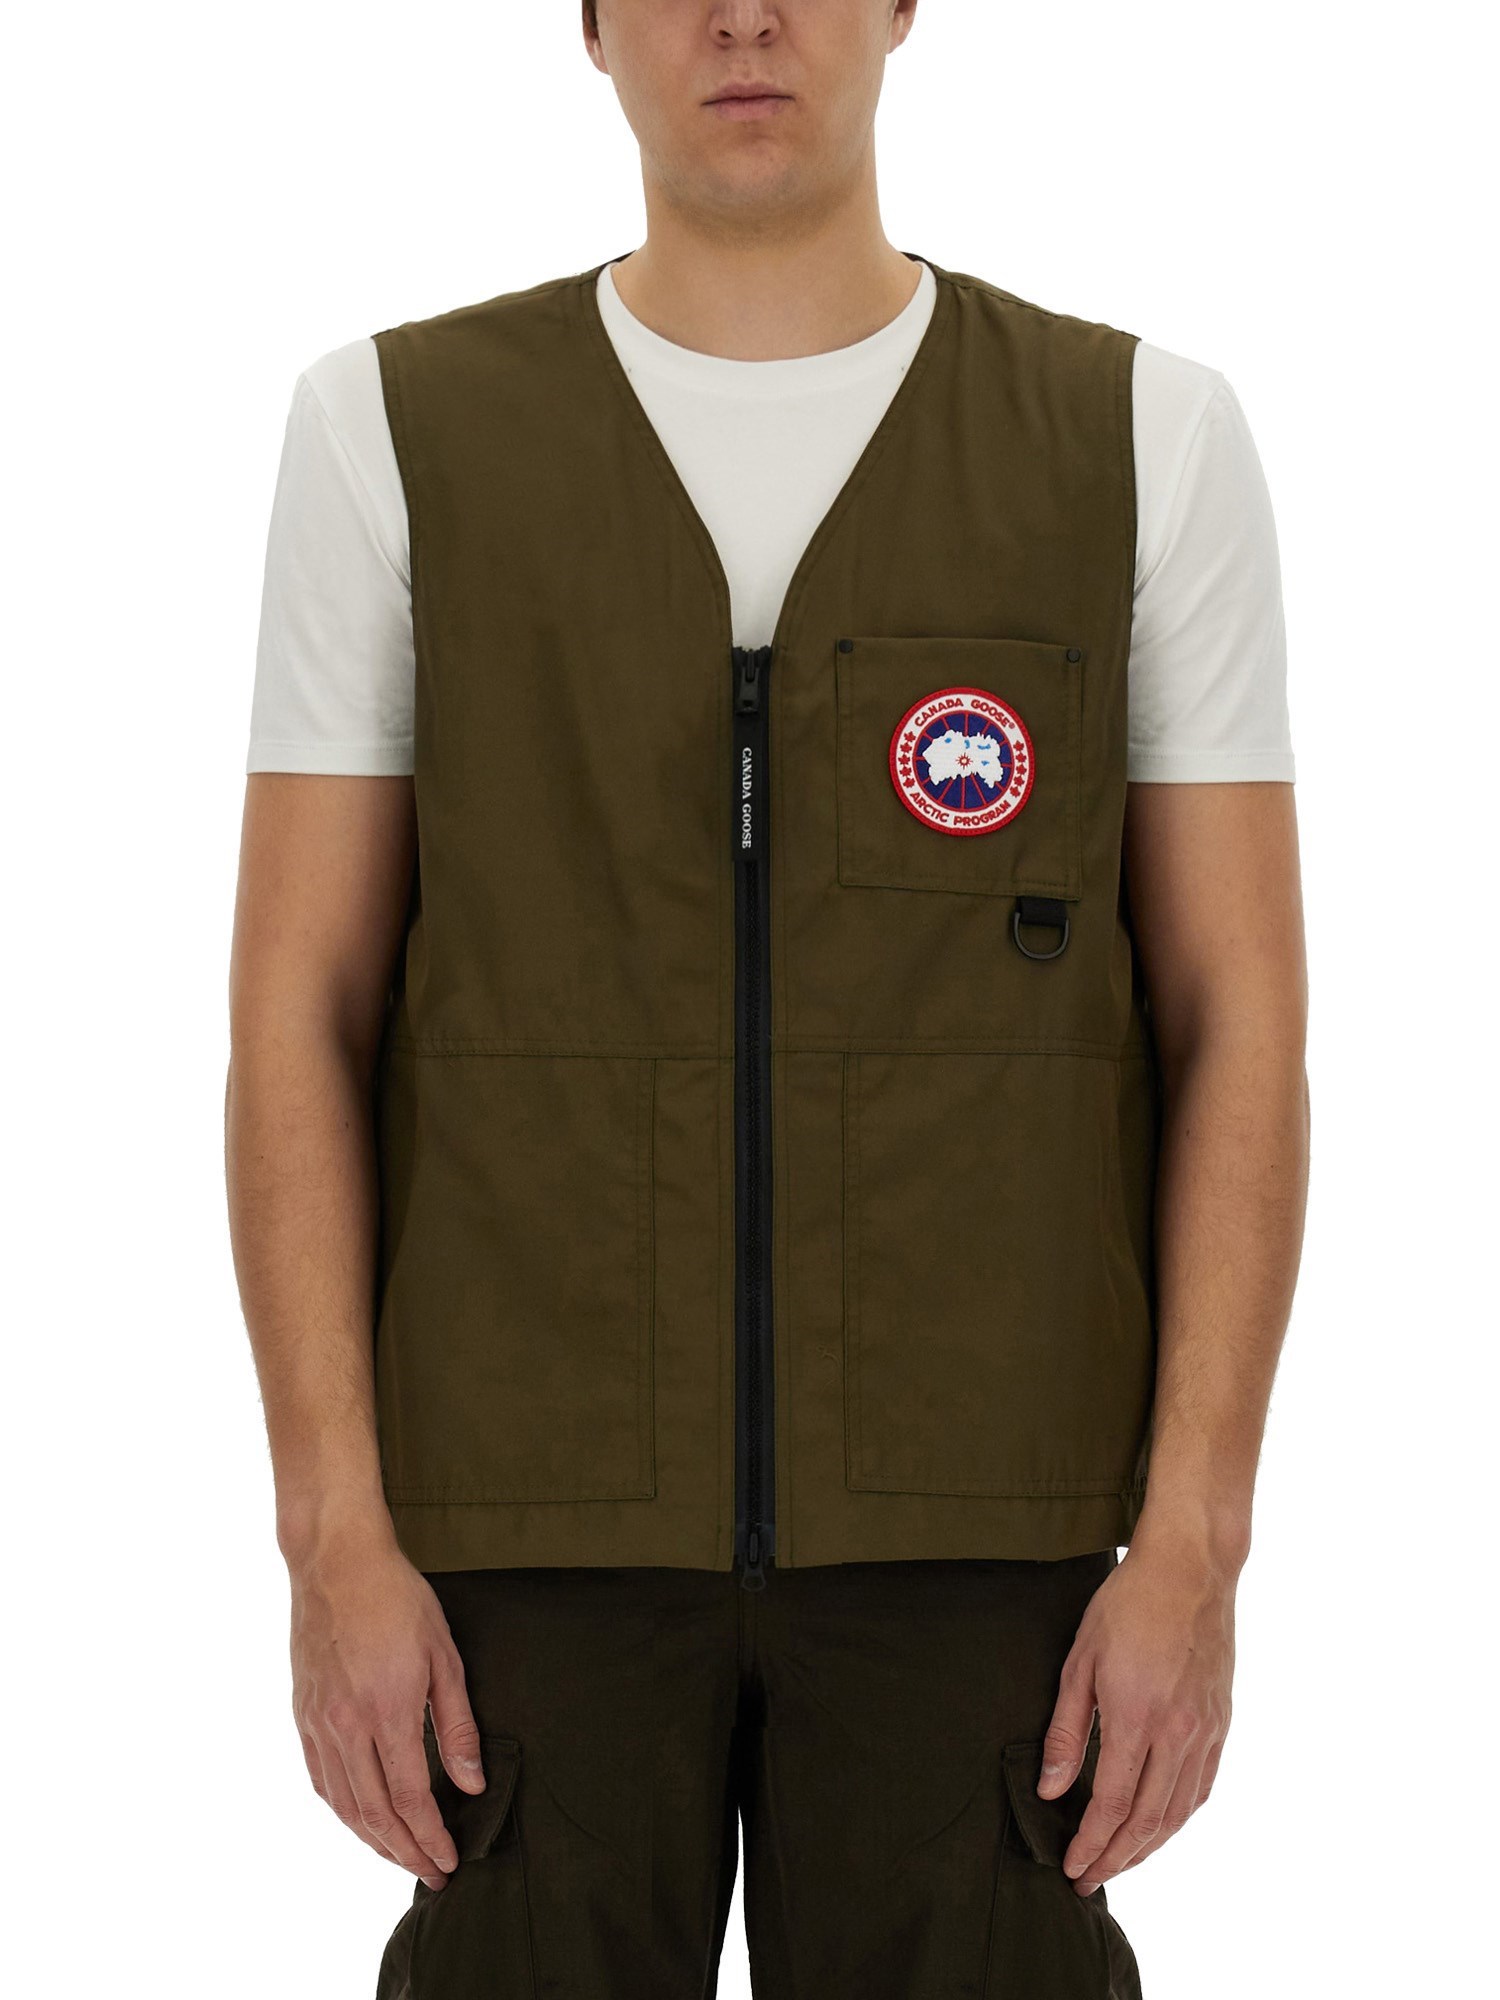 Canada Goose canada goose vests with logo